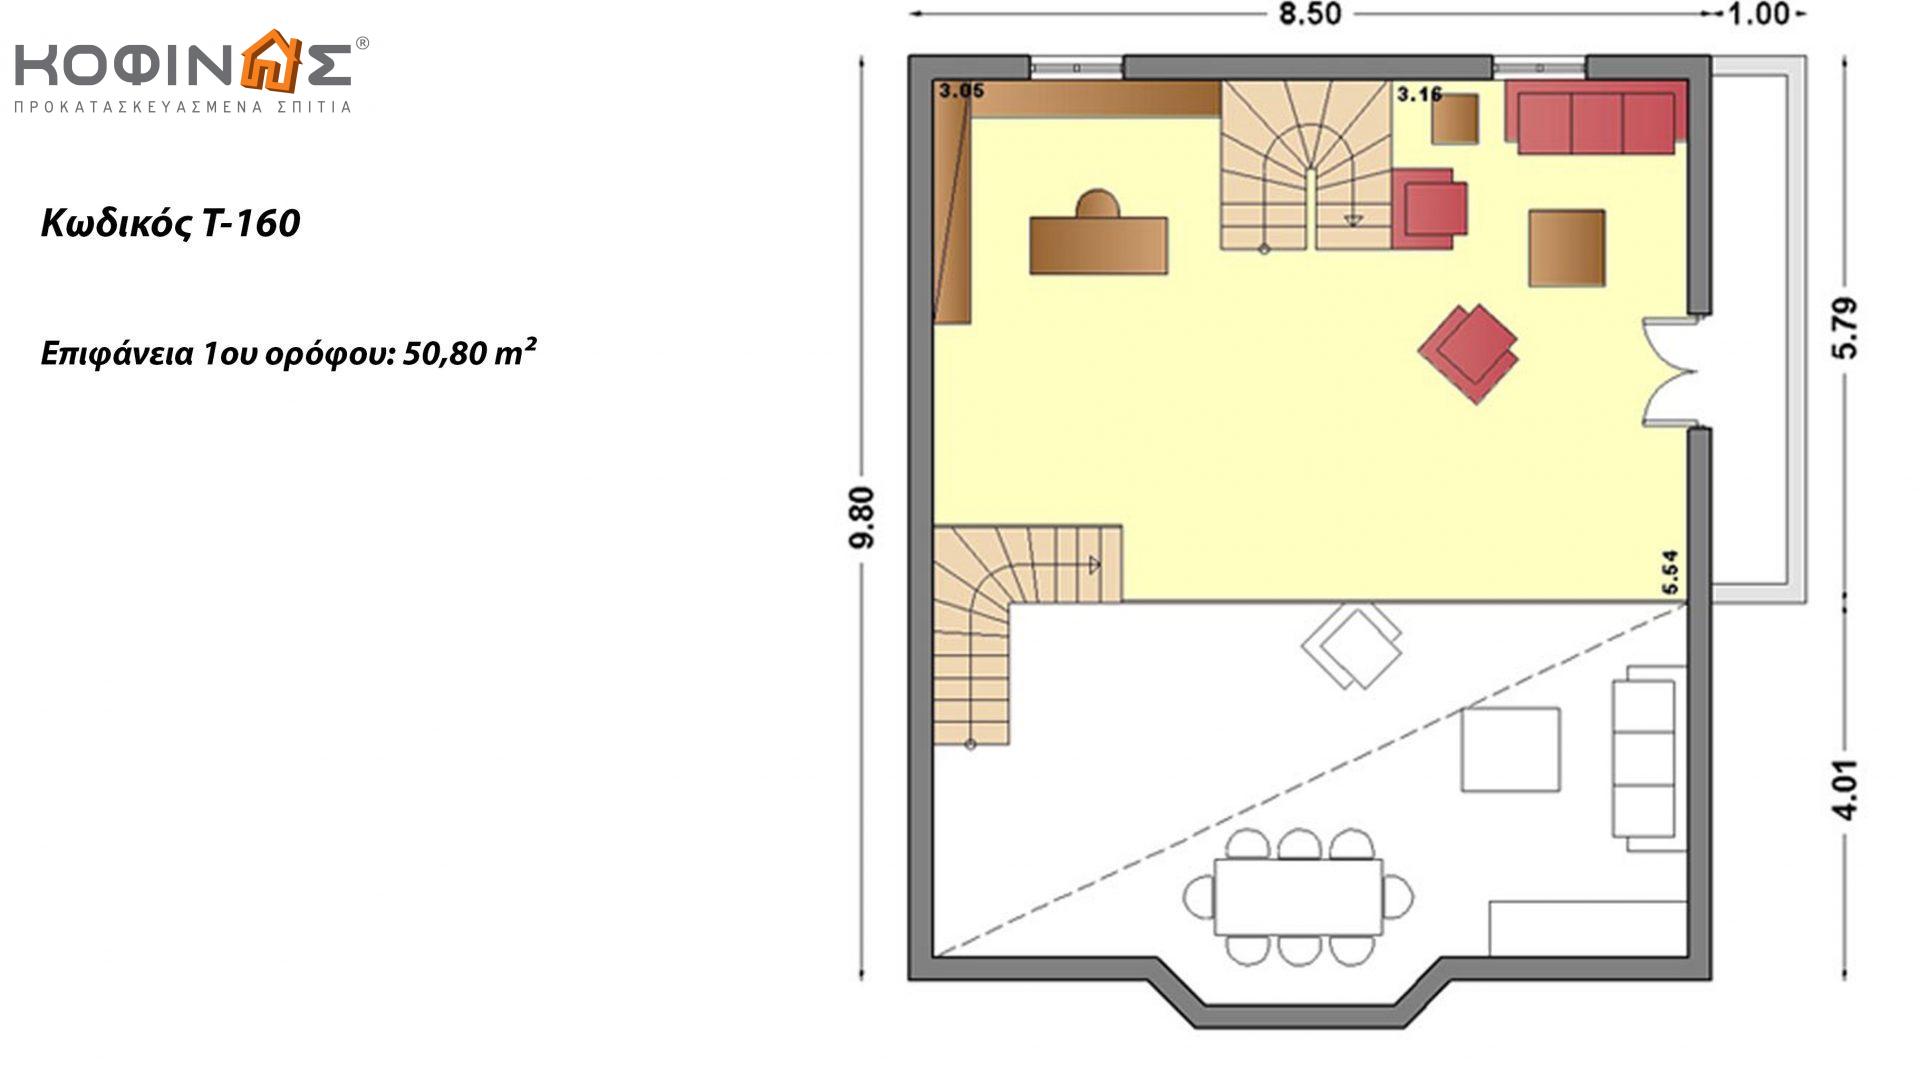 Τριώροφη Κατοικία T-160, συνολικής επιφάνειας 160,90 τ.μ. ,συνολική επιφάνεια στεγασμένων χώρων 64,10 τ.μ., μπαλκόνια 10,20τ.μ.